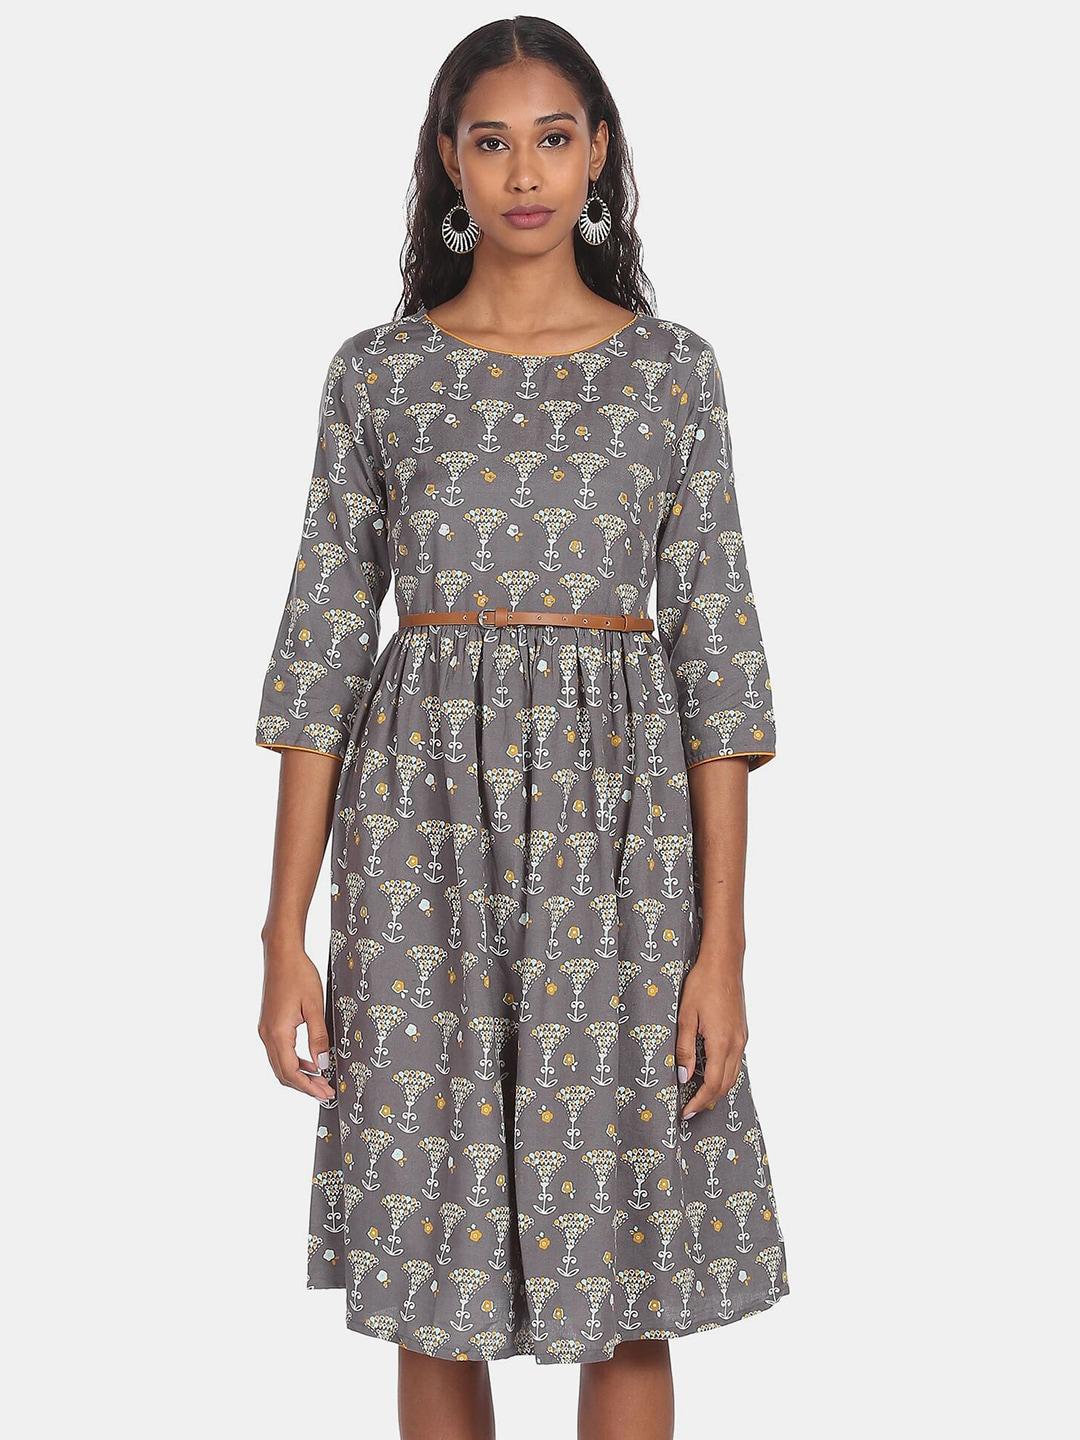 Karigari Grey Floral Printed Dress